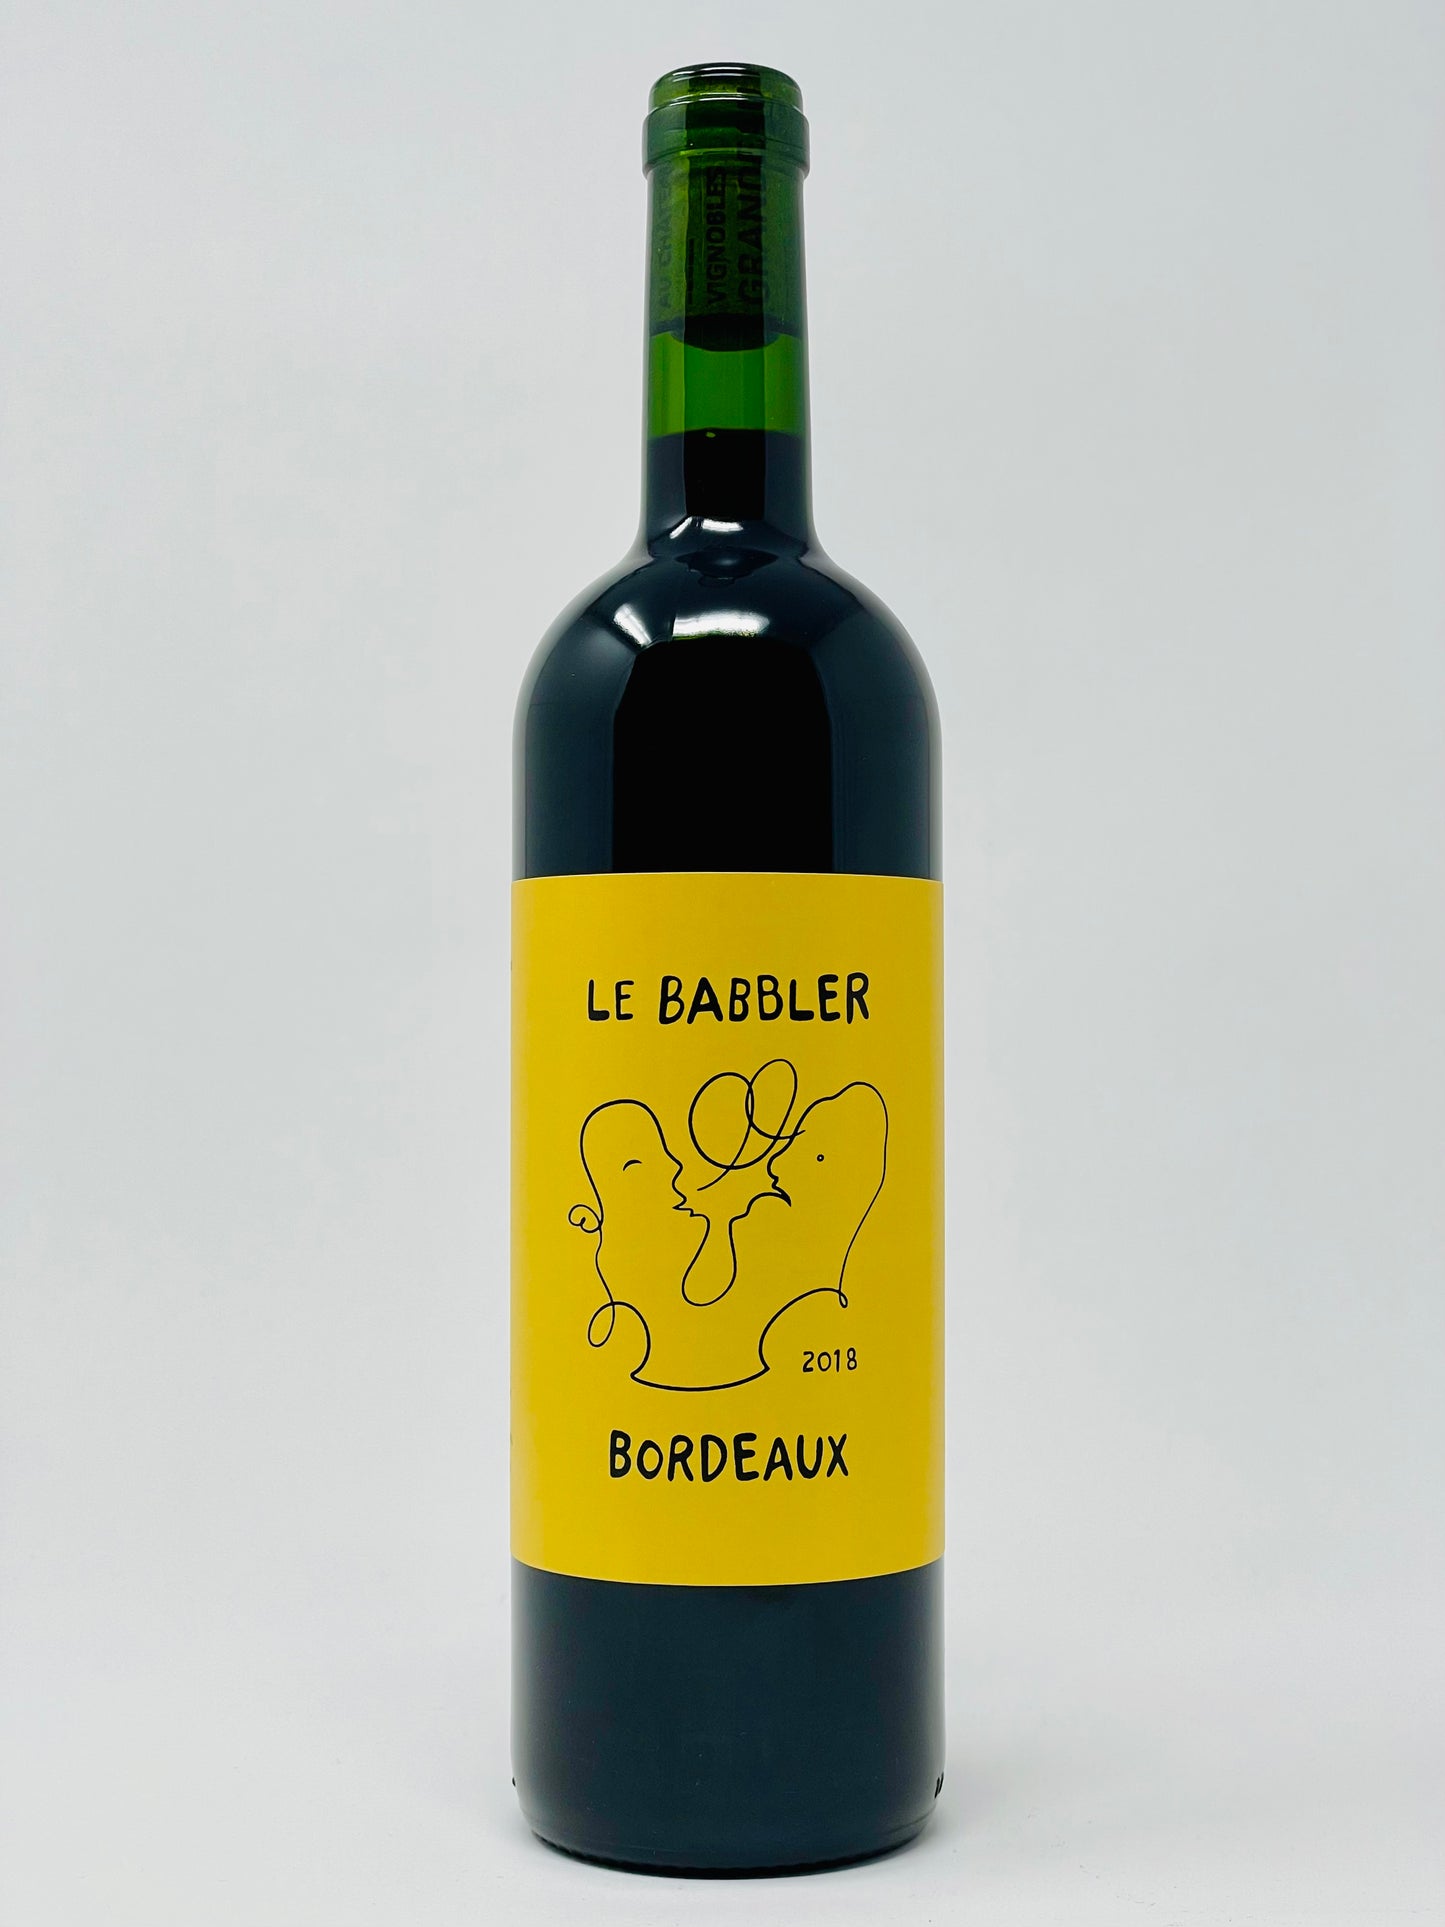 Le Babbler Bordeaux